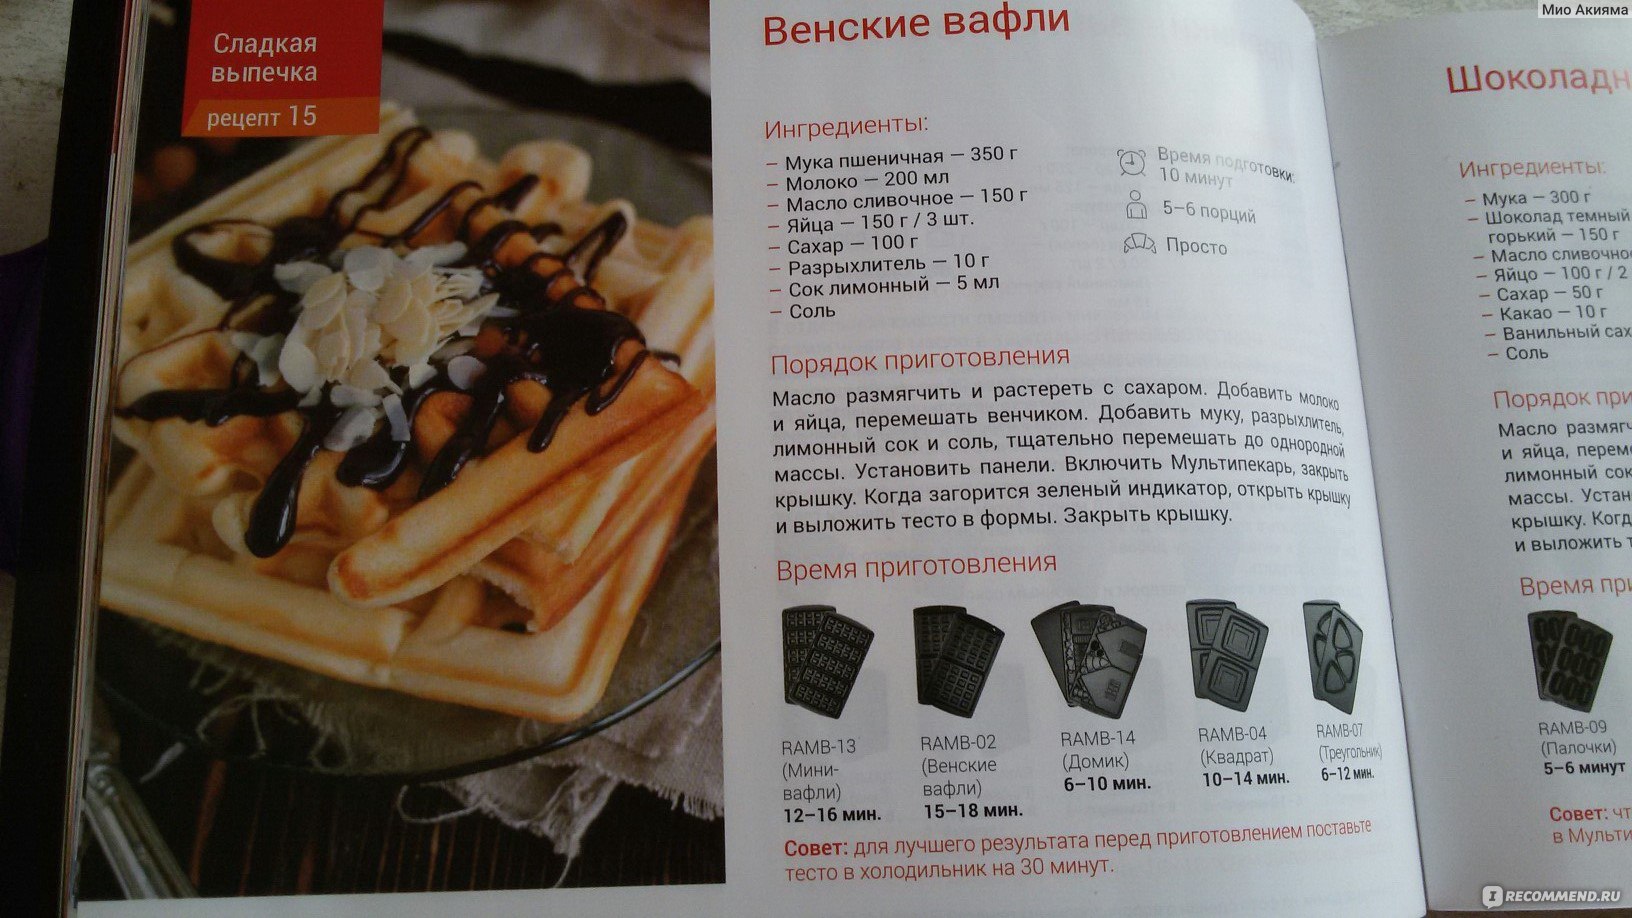 Тонкие вафли для мультипекаря redmond рецепт с фото